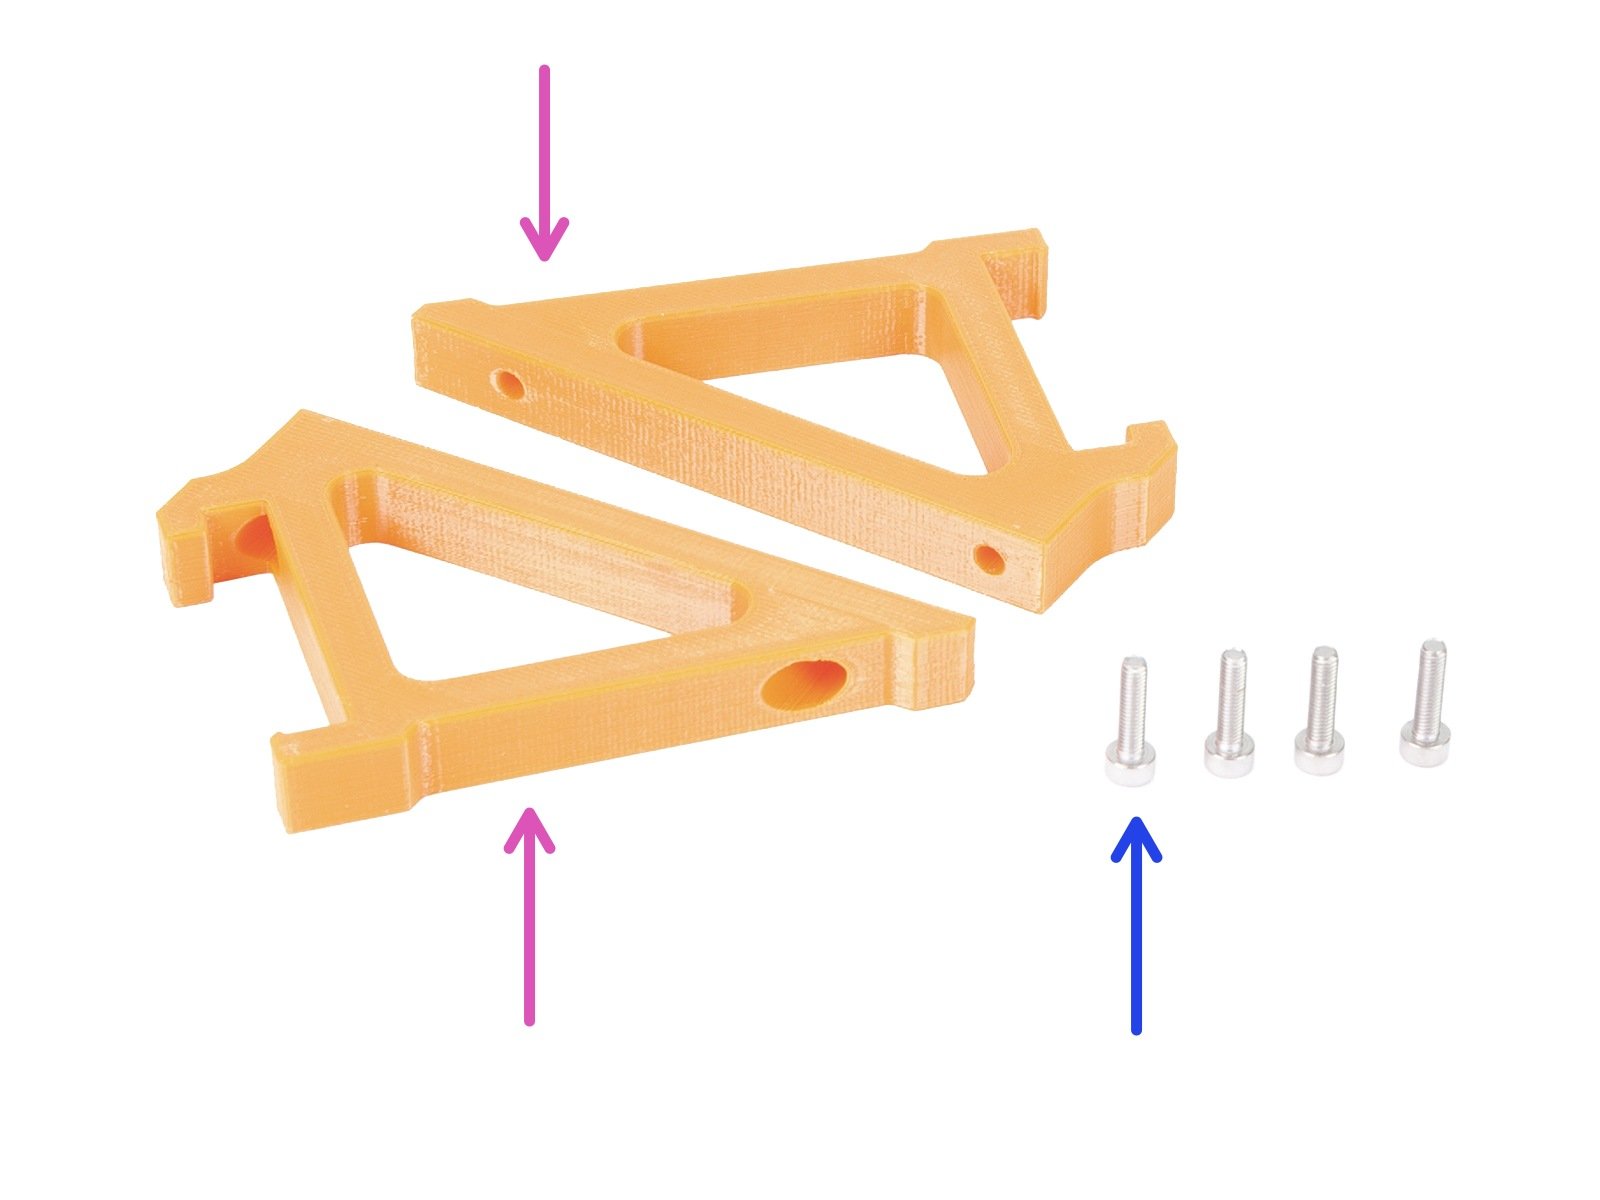 Frame holder parts preparation